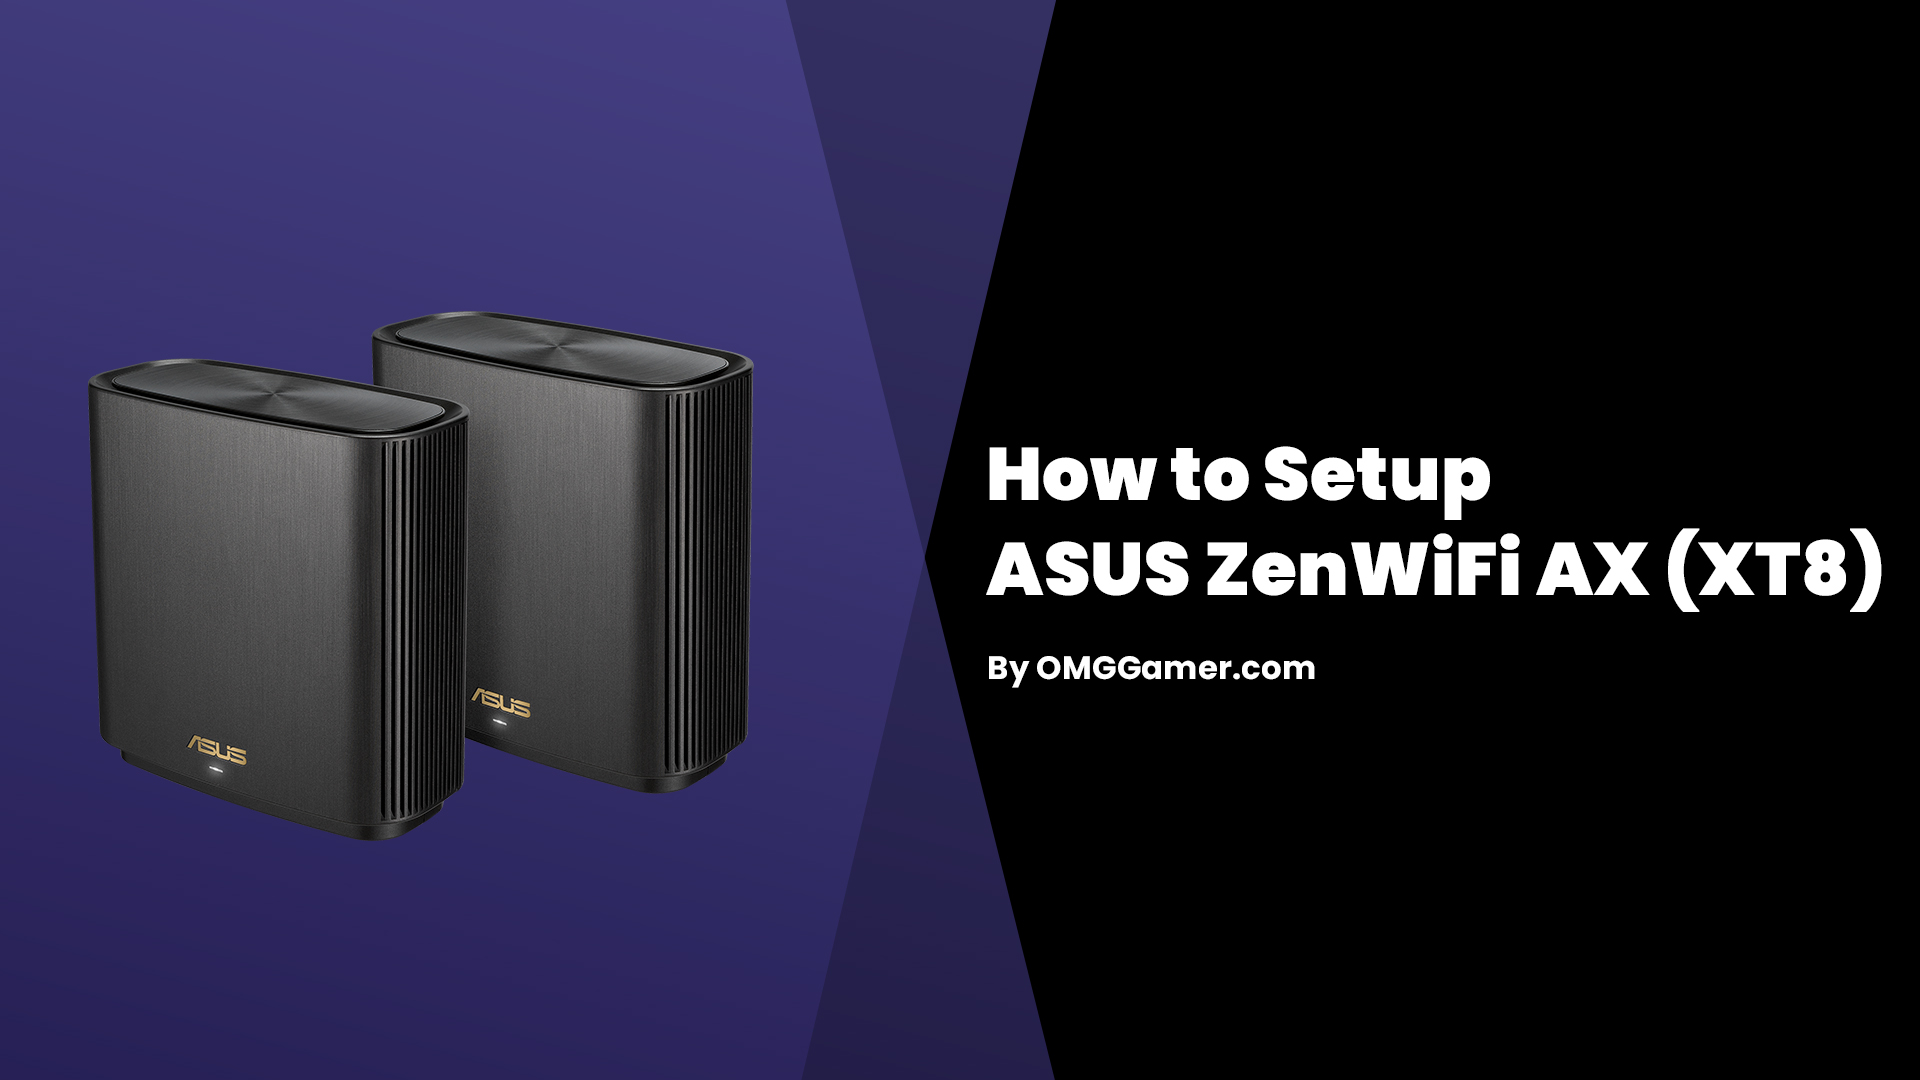 How to Setup ASUS ZenWiFi AX XT8